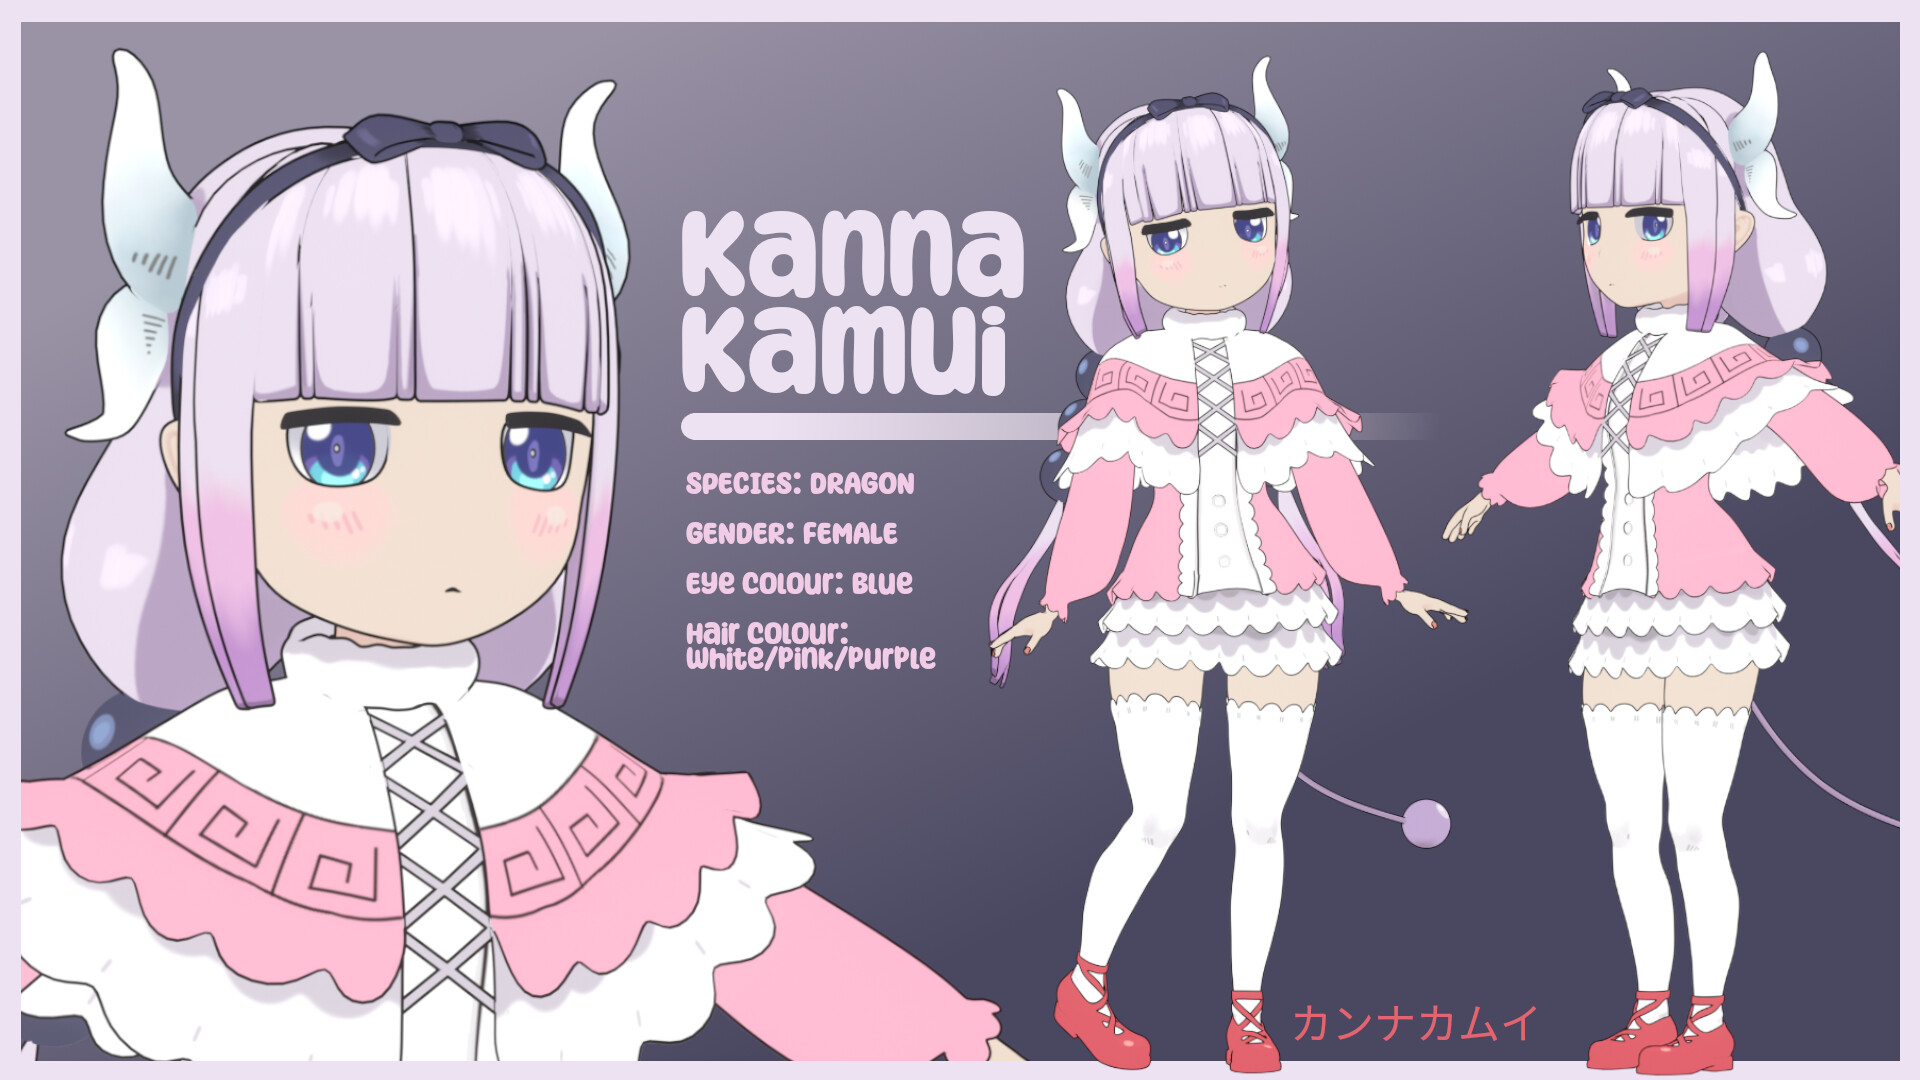 Kamui (Character) –